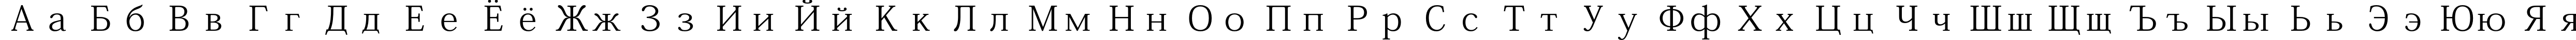 Пример написания русского алфавита шрифтом Adobe Kaiti Std R